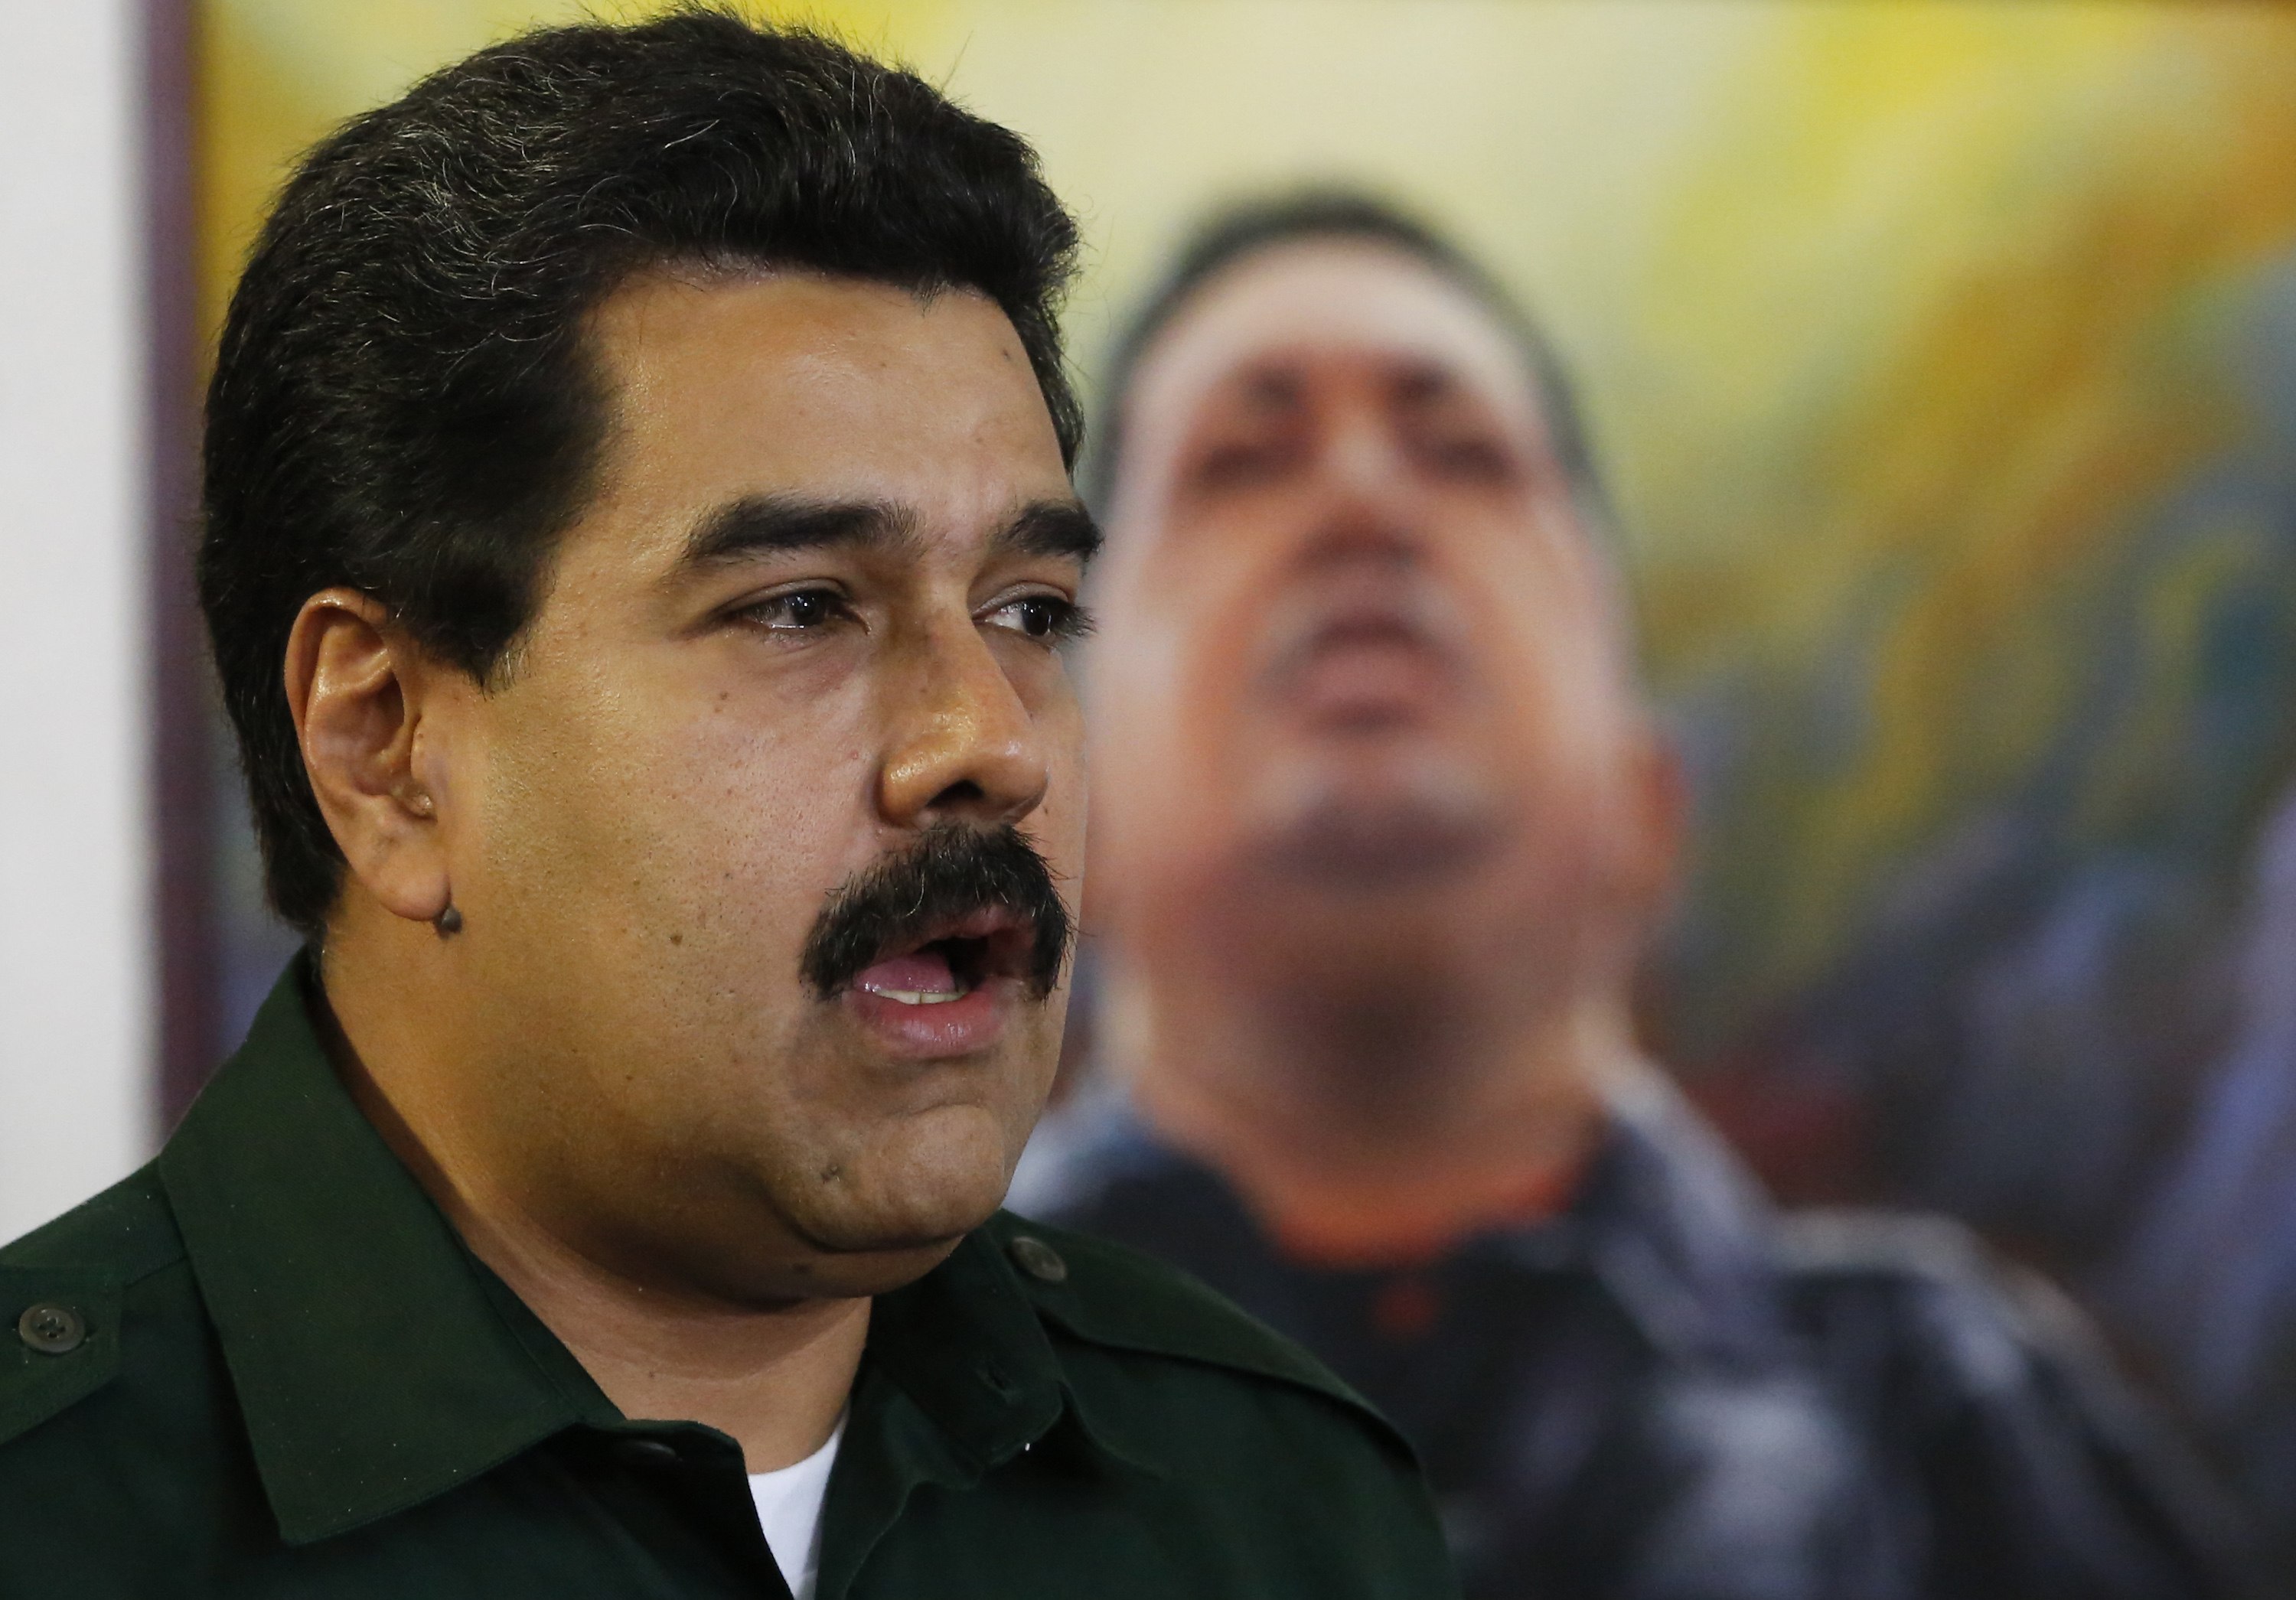 Para Maduro “la derecha” quiere darle plomo al pueblo cada vez que pide “plomo al hampa”